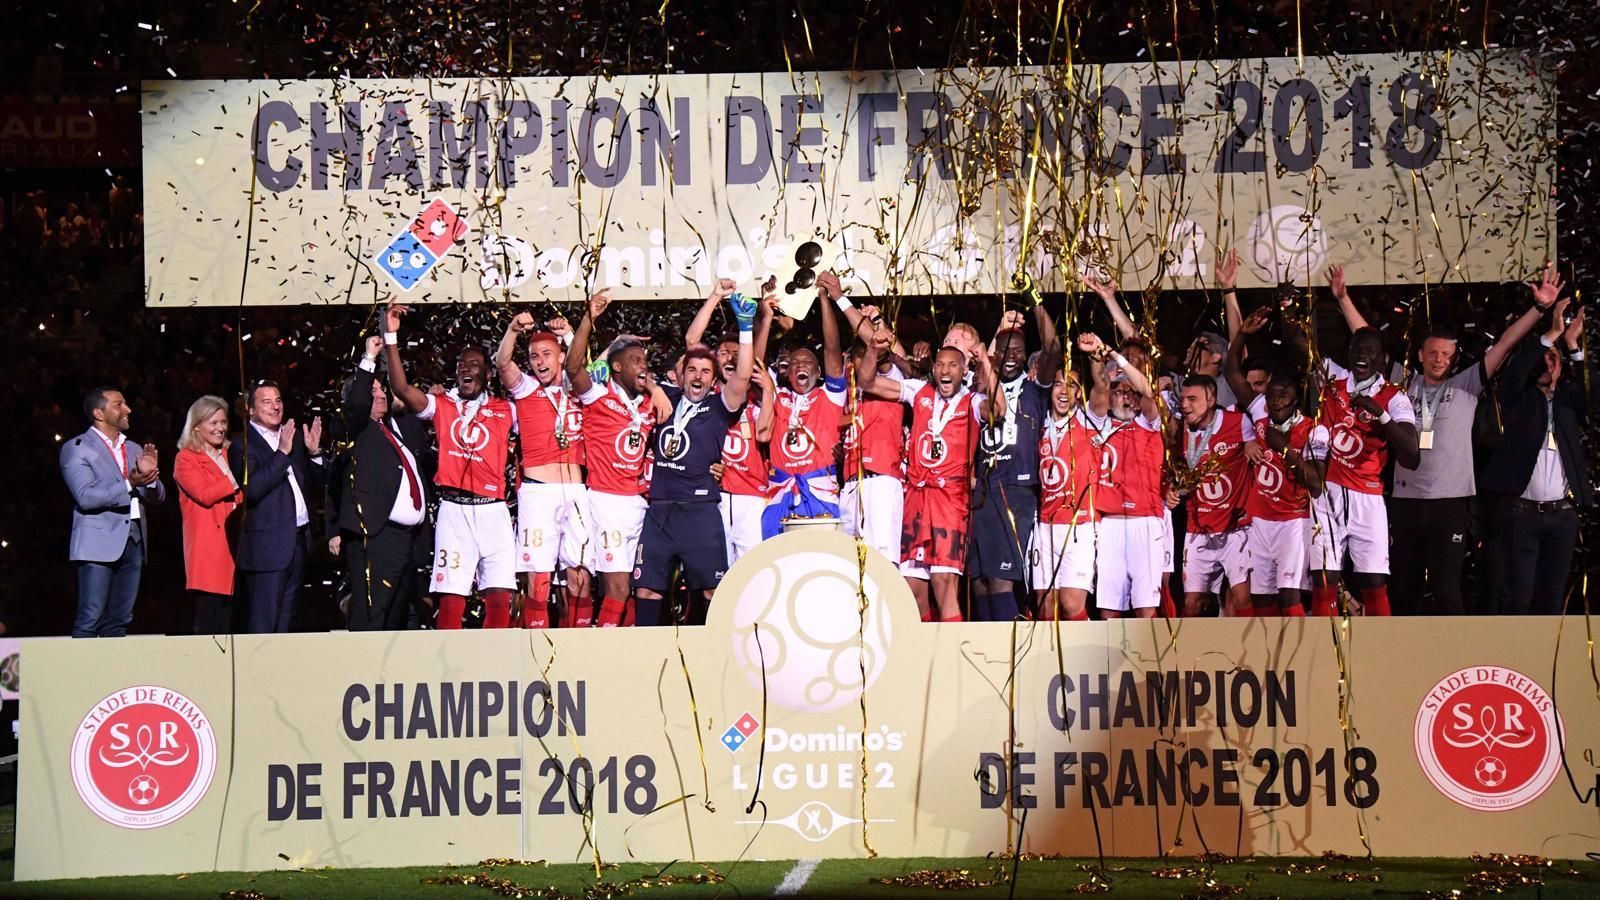 
                <strong>Stade Reims (Ligue 2)</strong><br>
                Stade Reims hat den Aufstieg in die Ligue 1 geschafft. Nach zwei Jahren in der Ligue 2 kehrt Reims wieder in die erste französische Liga zurück.
              